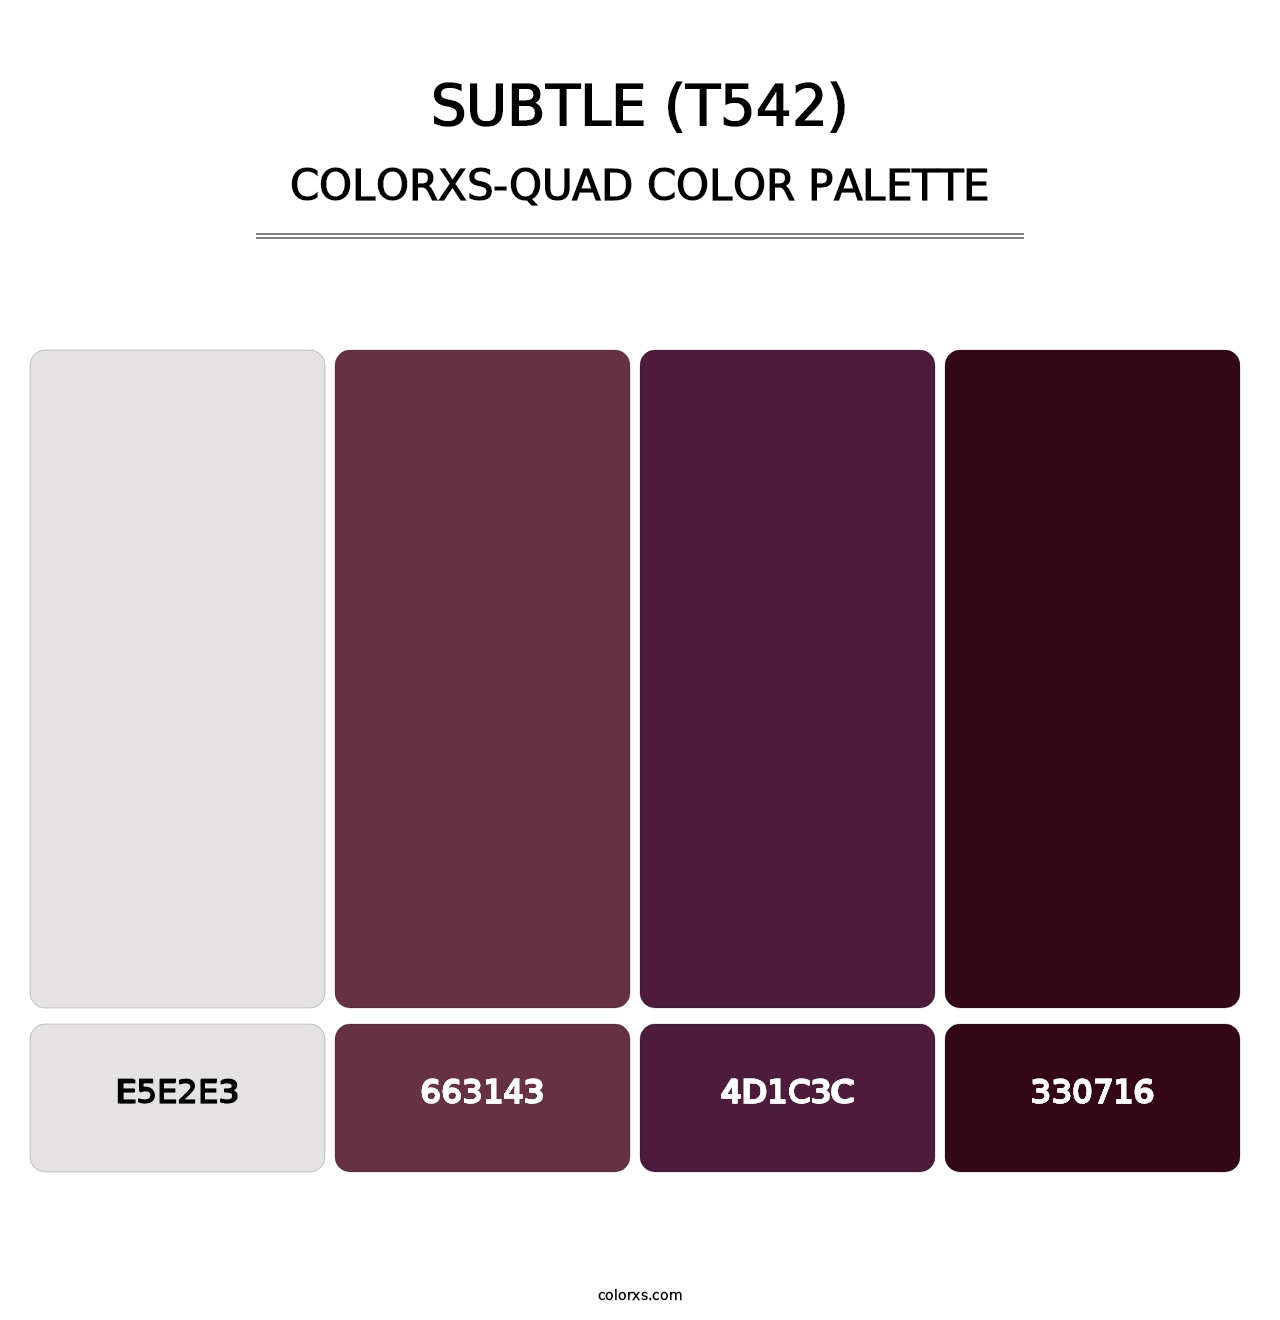 Subtle (T542) - Colorxs Quad Palette